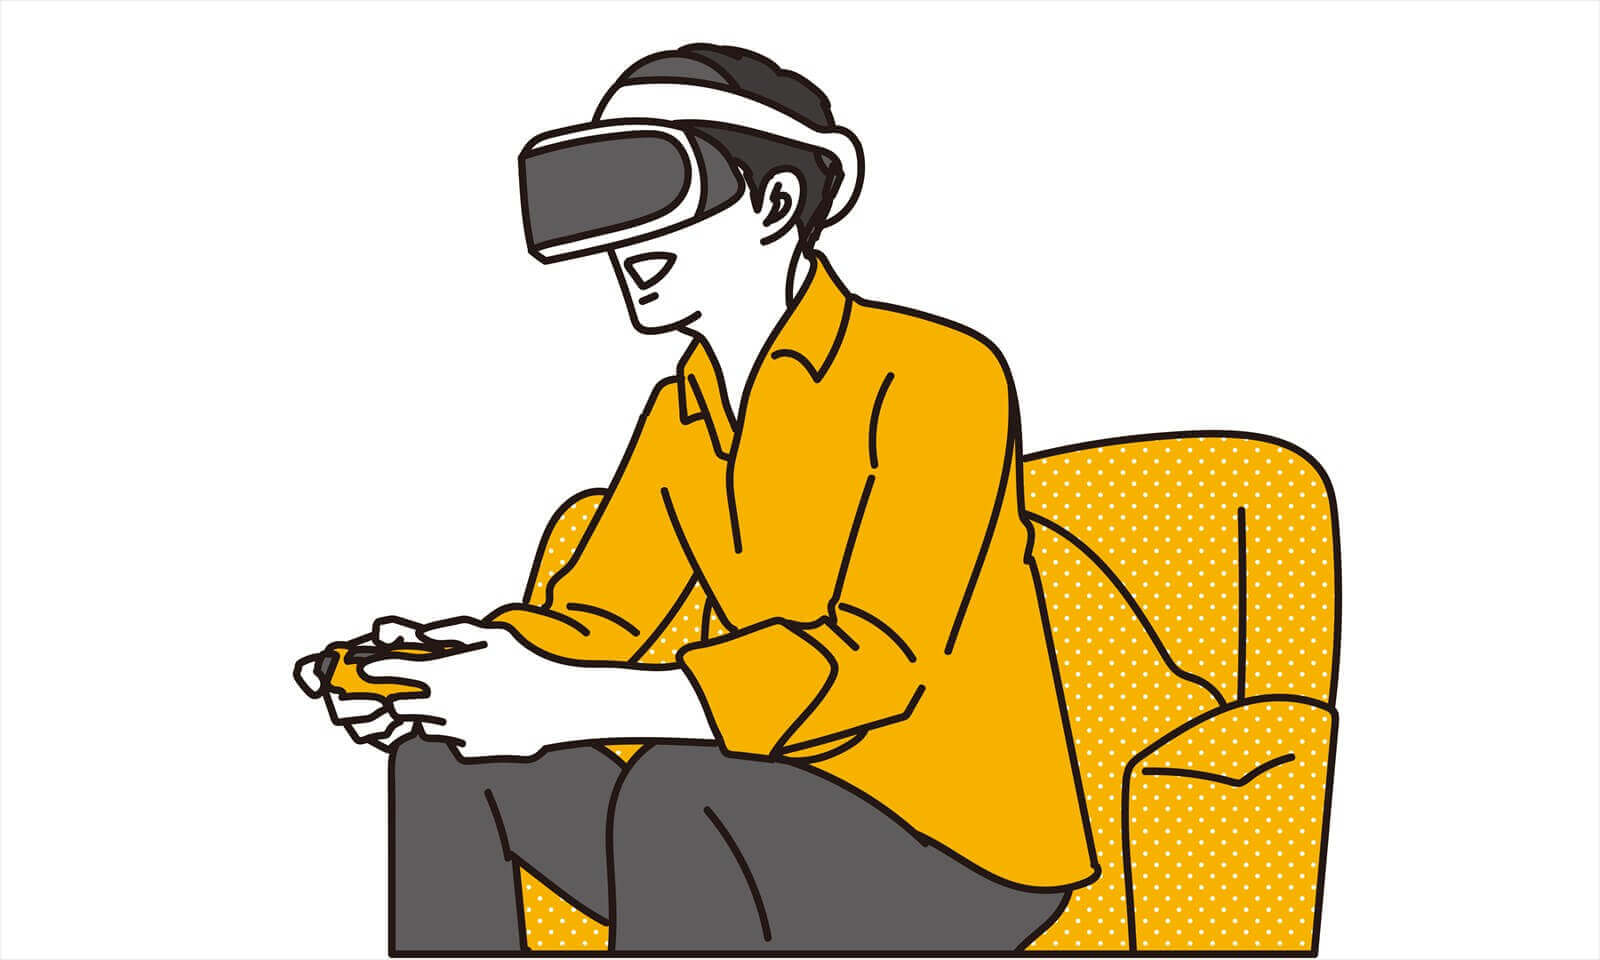 障がい者✖VR。VRとは？VRは障がい者の生活にどのように活用されている？